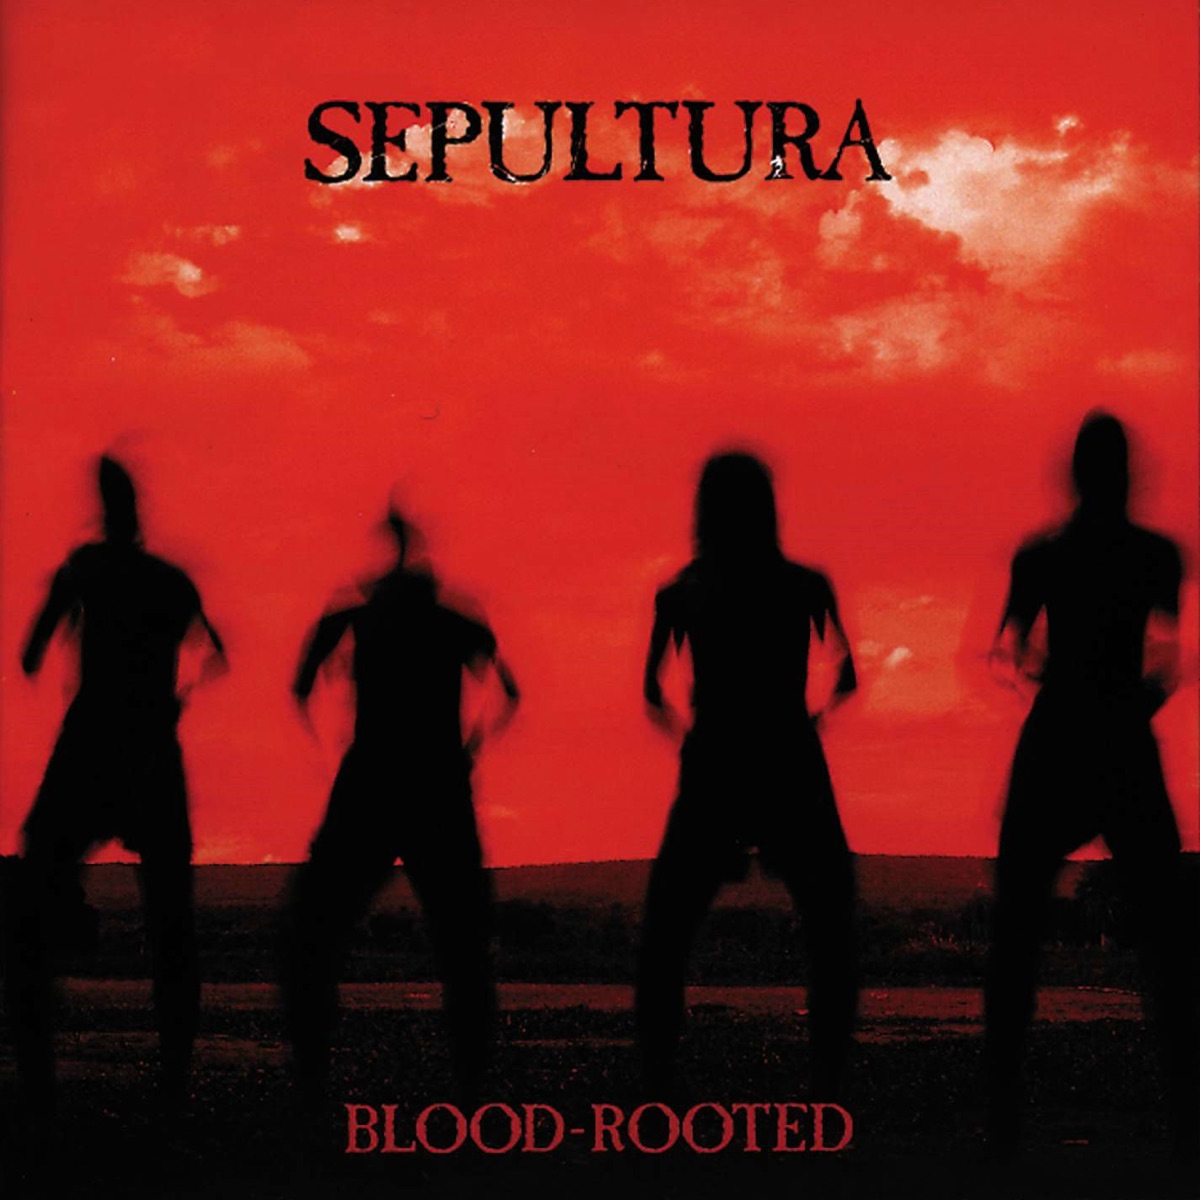 Sepulquarta by Sepultura on Apple Music